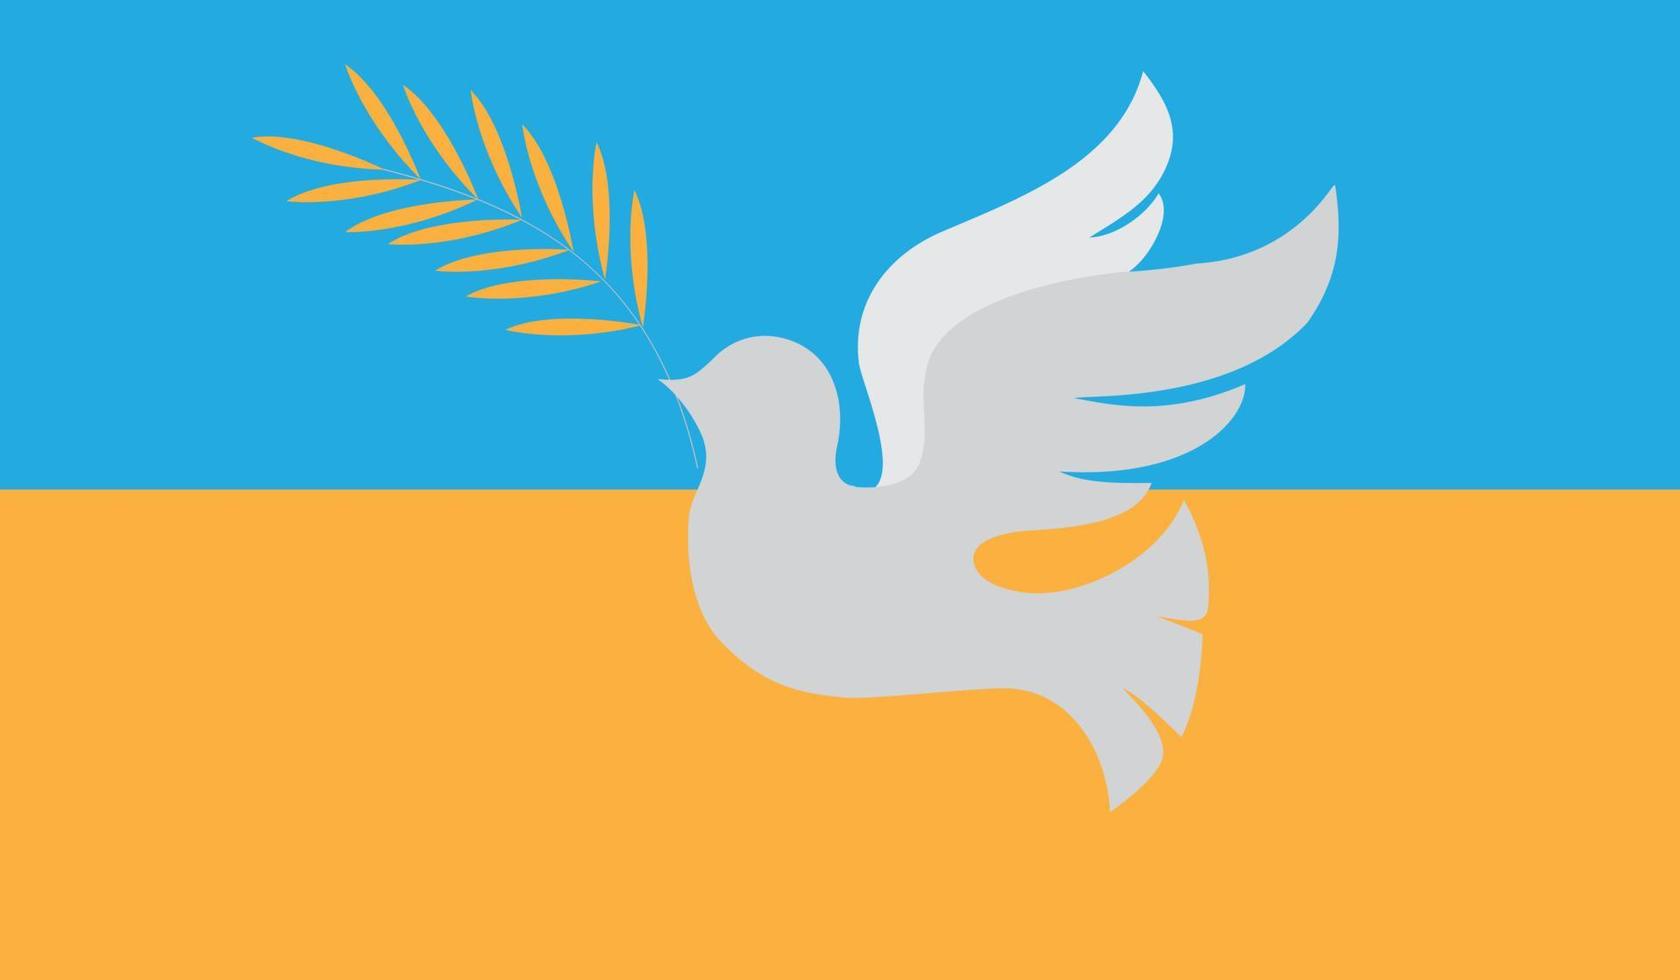 duvan är en symbol för fred i ukraina, ett tecken på slutet på kriget. blå och gul statsflagga vektor